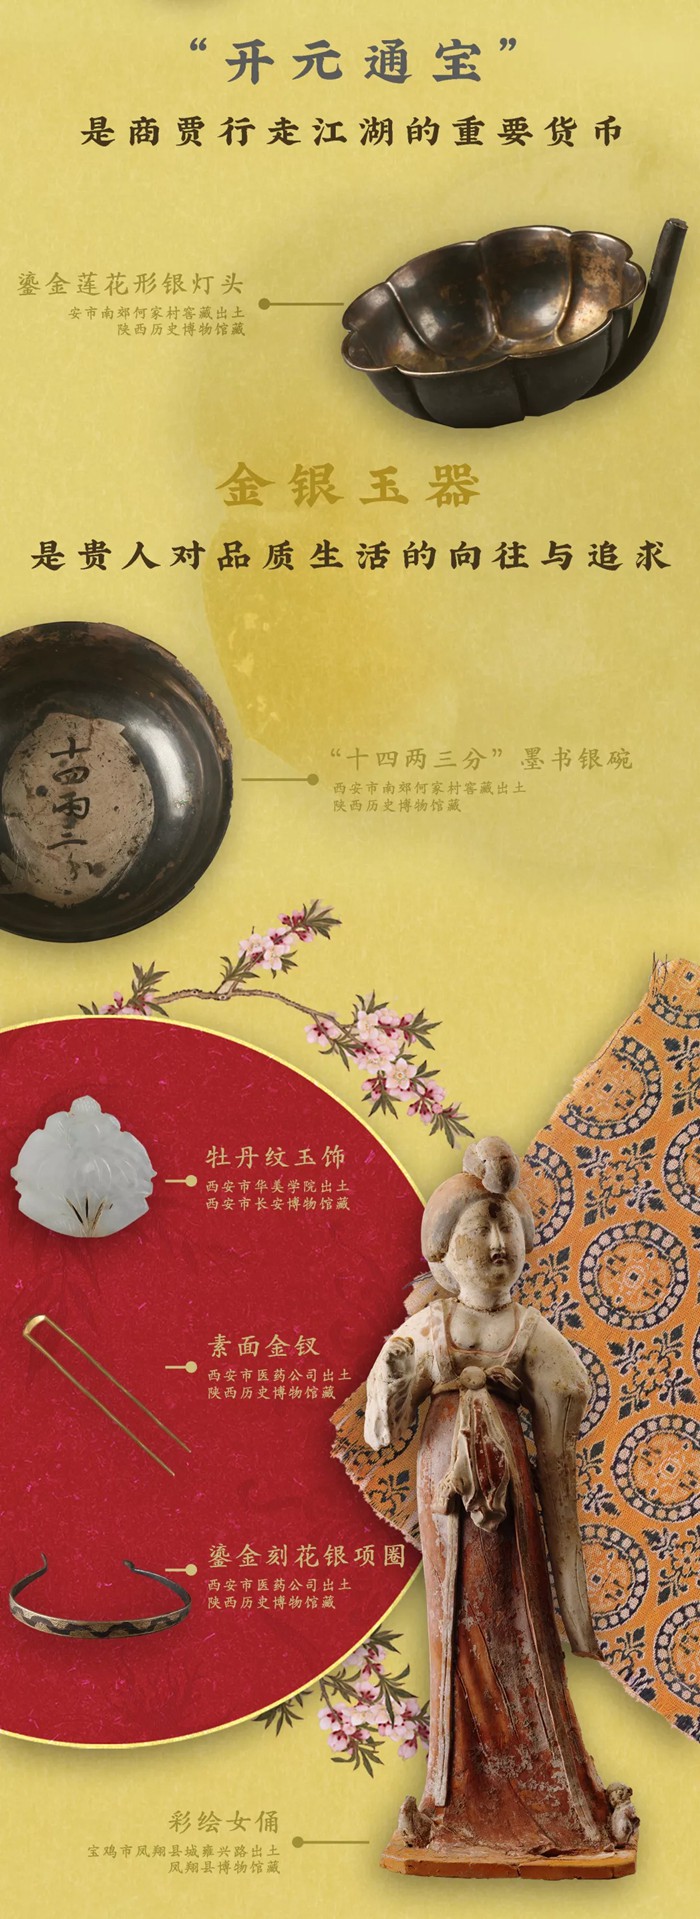 【南山博物馆】永远的长安——陕西唐代文物精华展